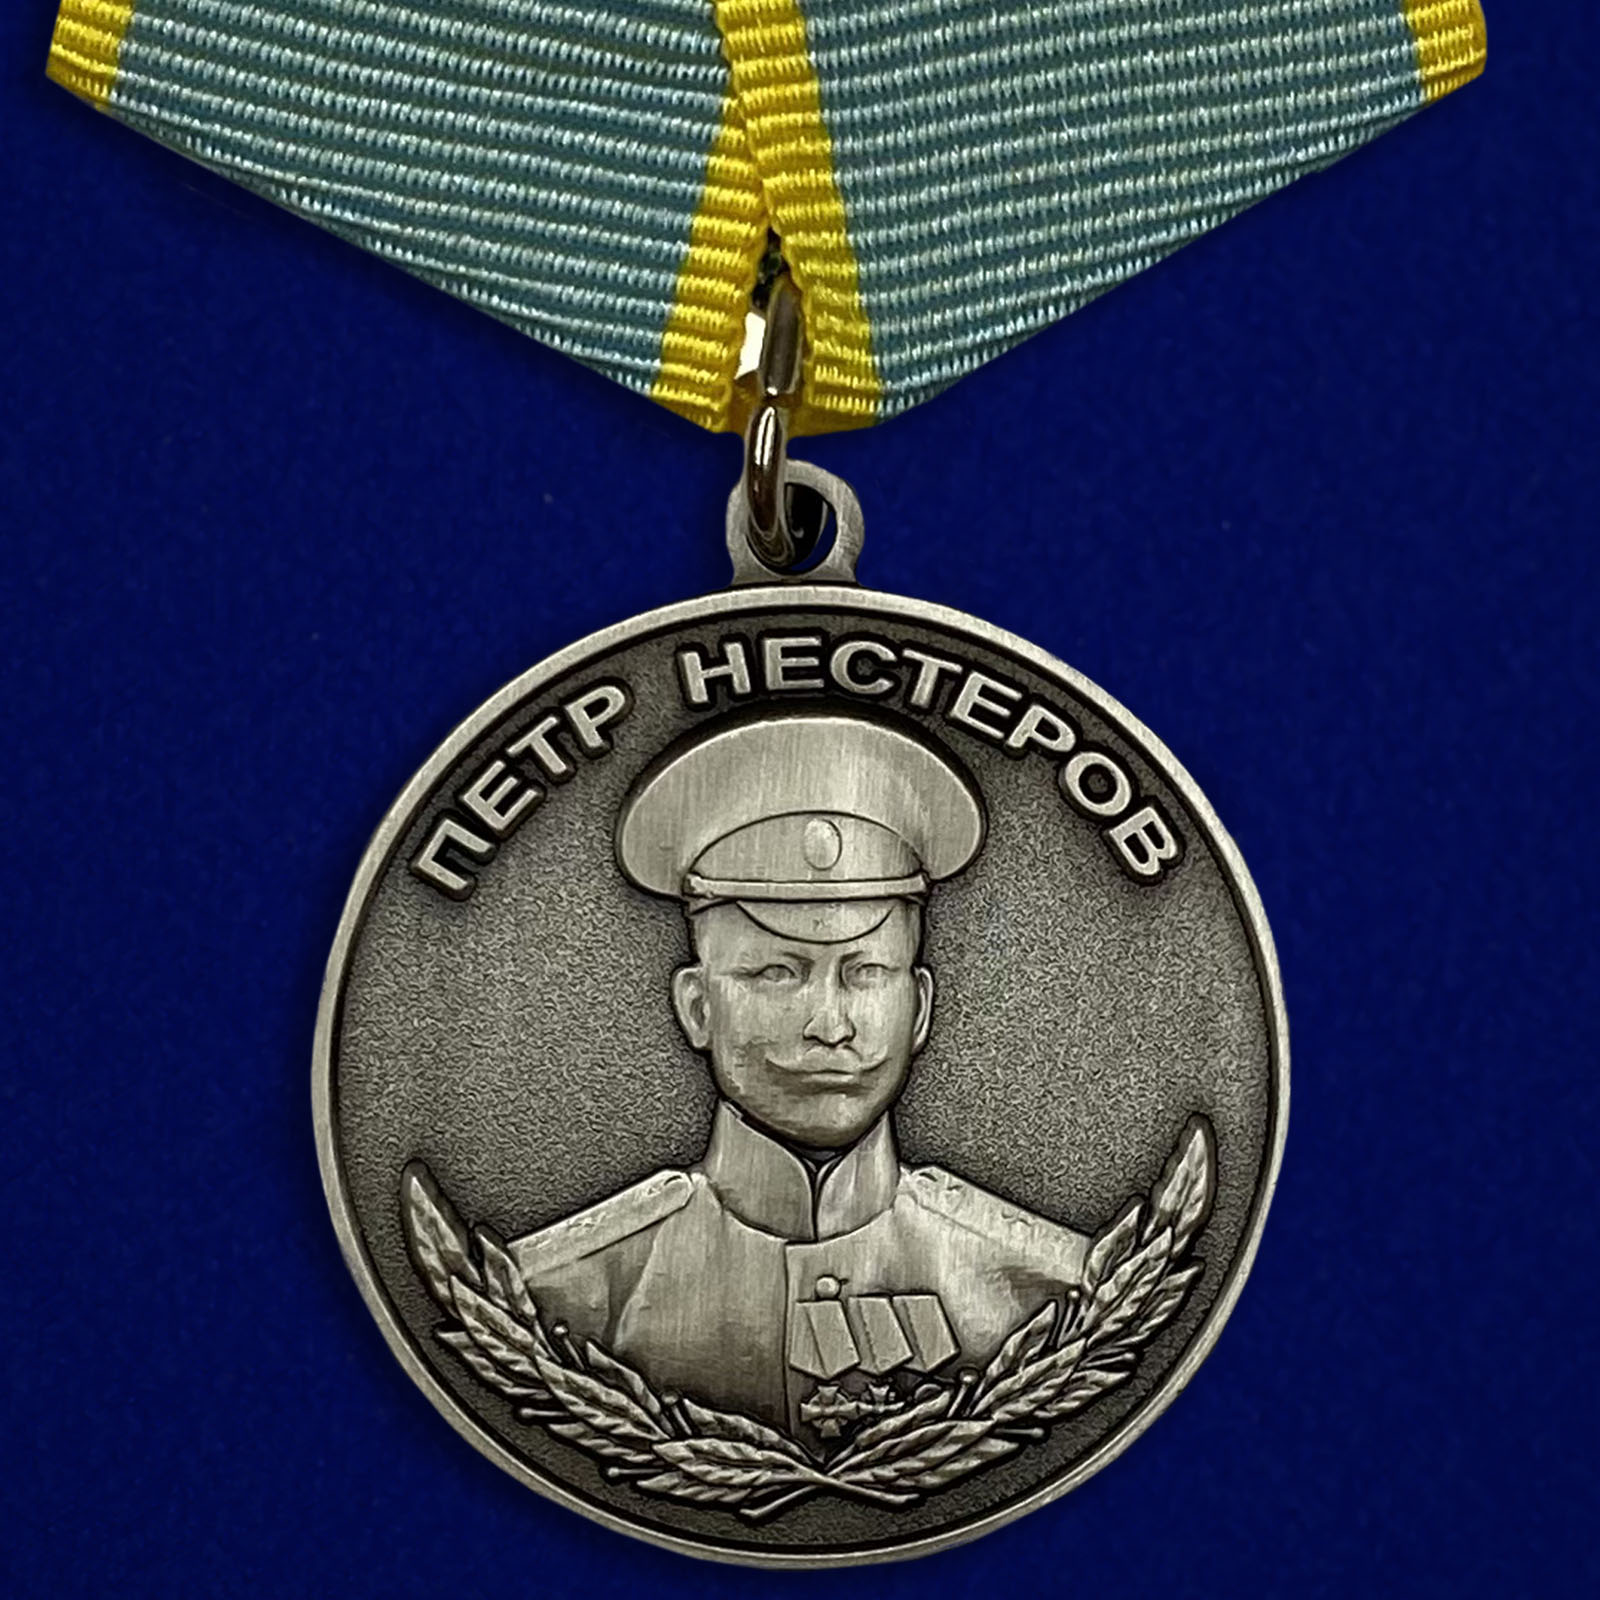 Купить медаль Нестерова на подставке онлайн выгодно